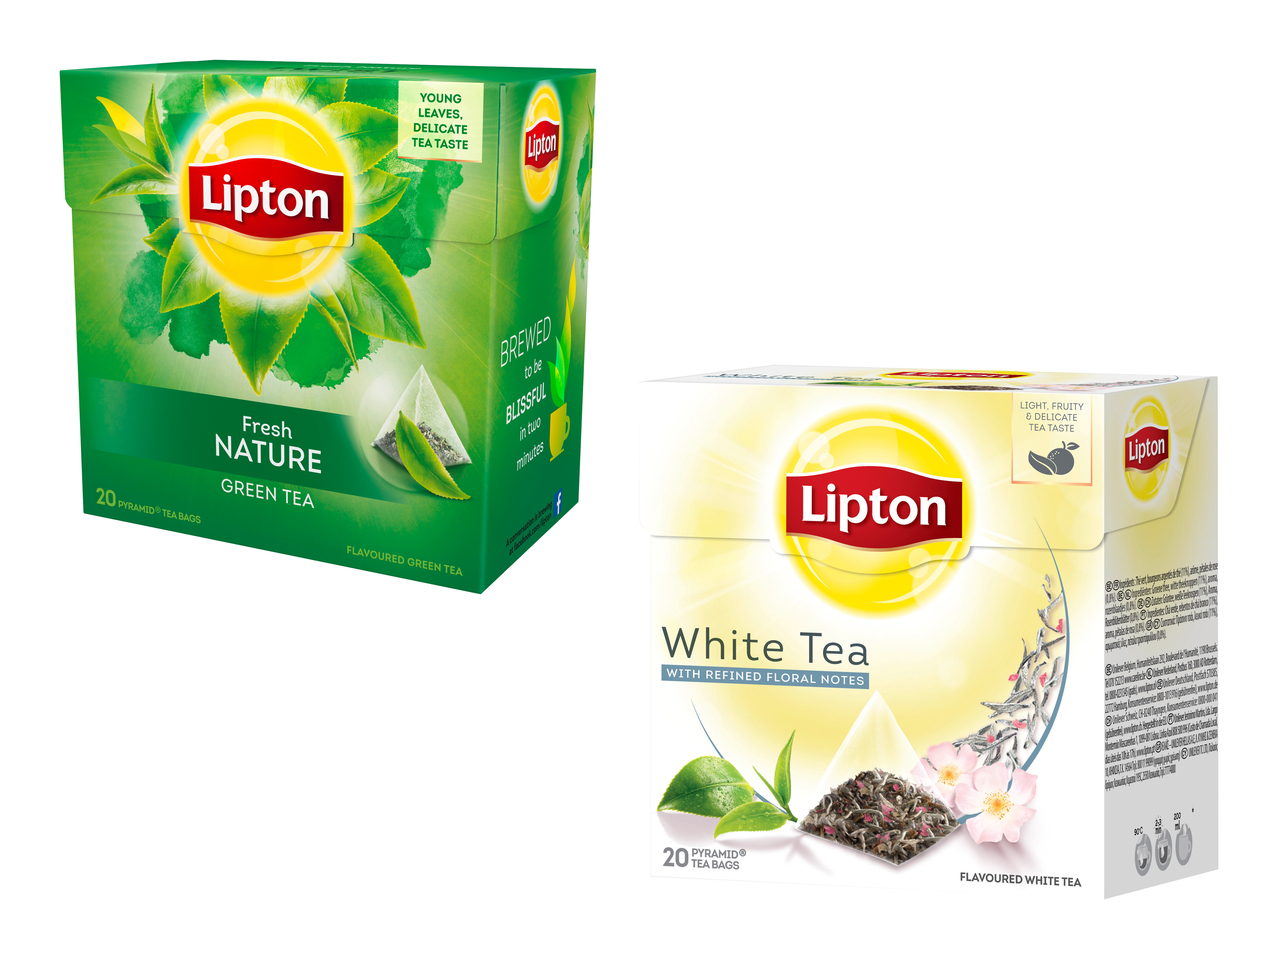 Lipton Green Tea Fresh Nature/ White Tea